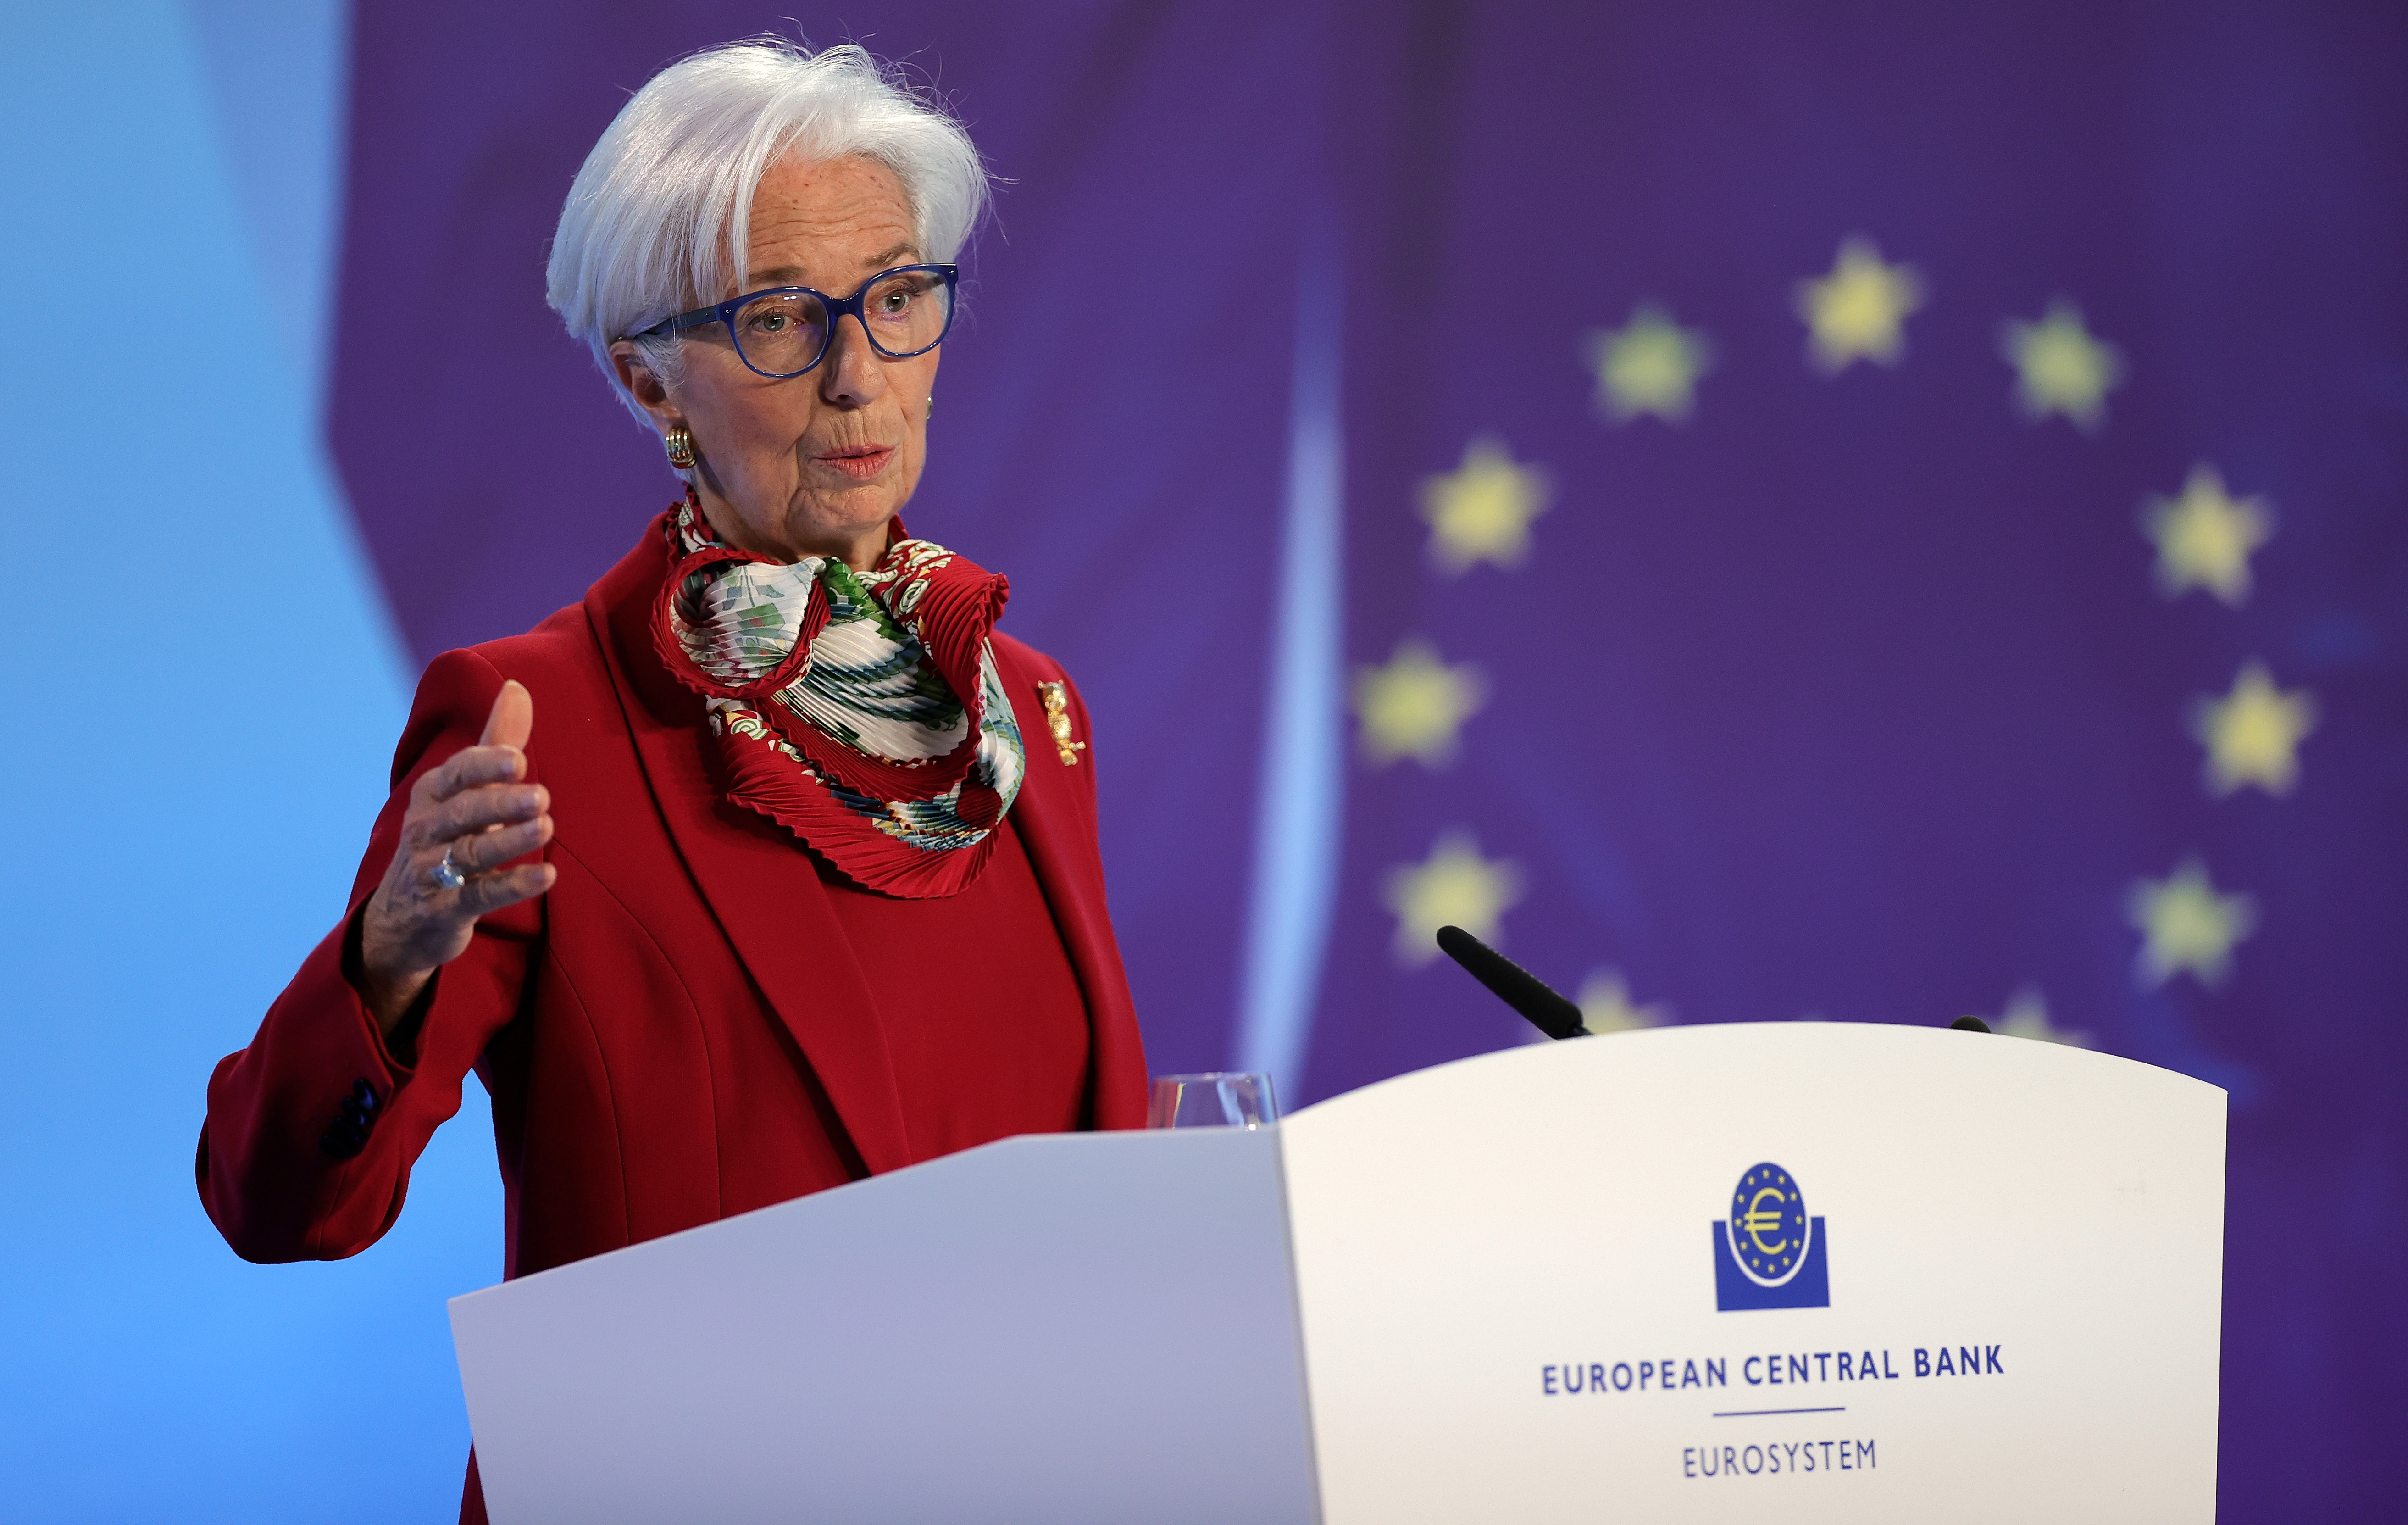 تلقي رئيسة البنك المركزي الأوروبي كريستين لاغارد كلمة في مؤتمر صحفي عقب اجتماع مجلس إدارة البنك المركزي الأوروبي في فرانكفورت أم ماين ألمانيا في 16 مارس 2023.